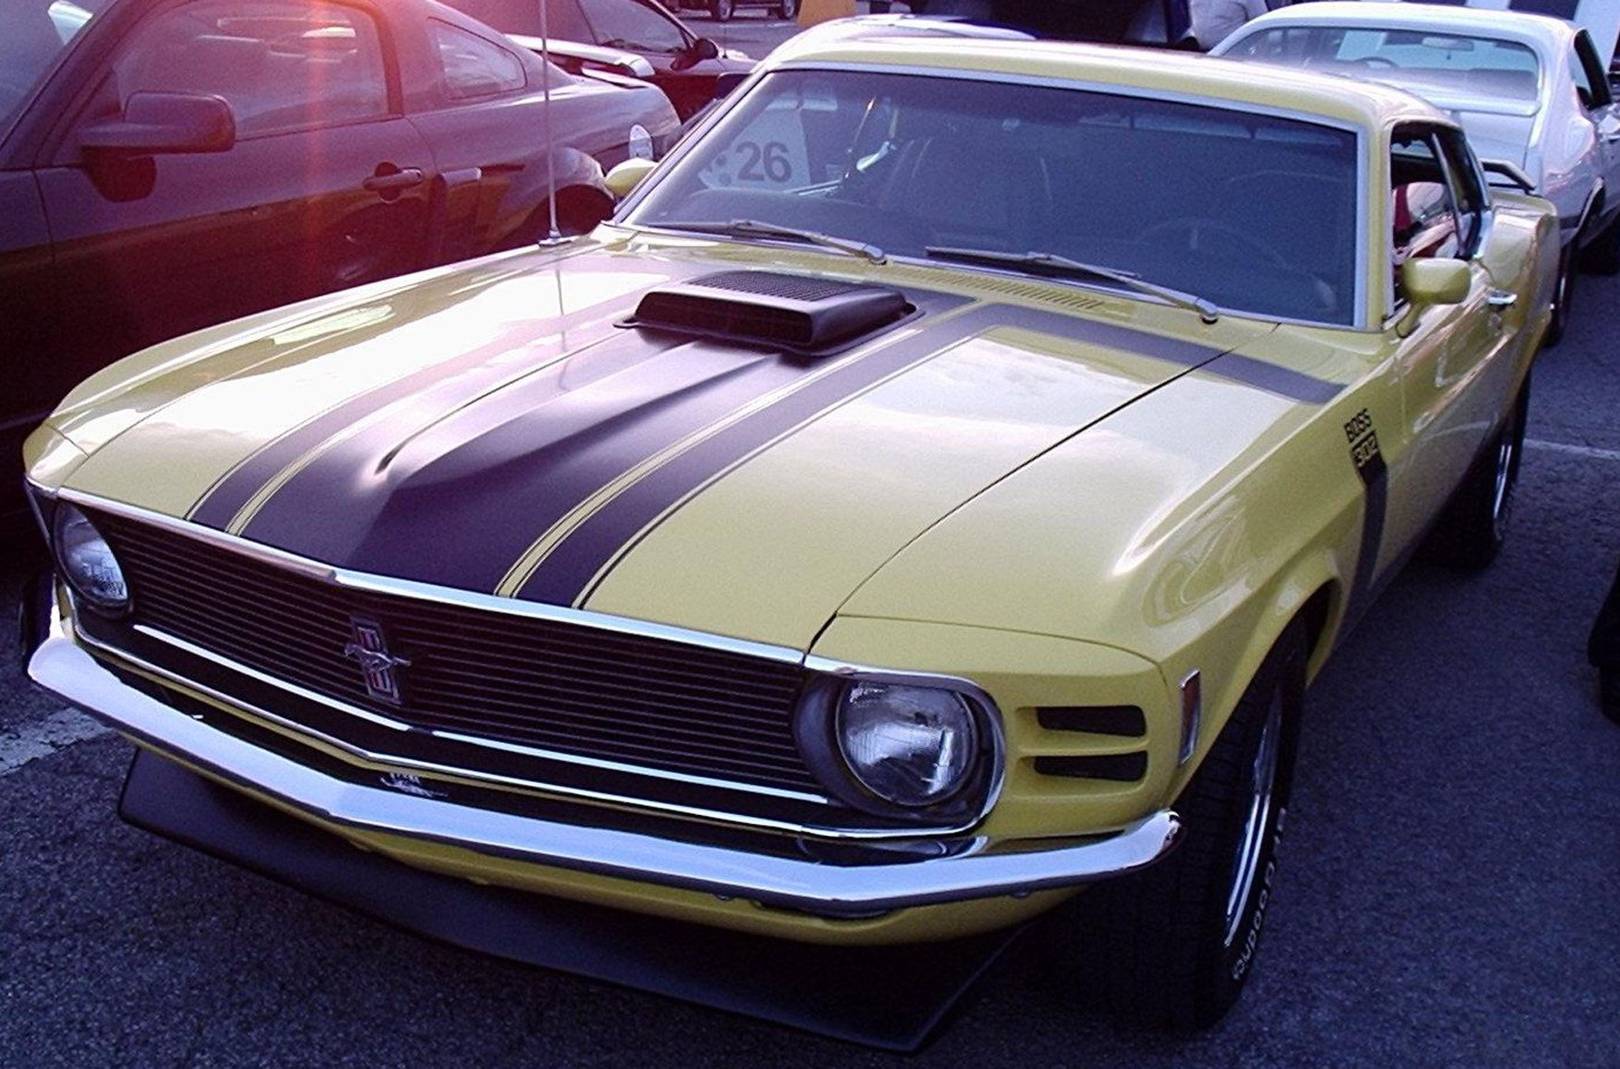 سيارة Boss 302 Mustang